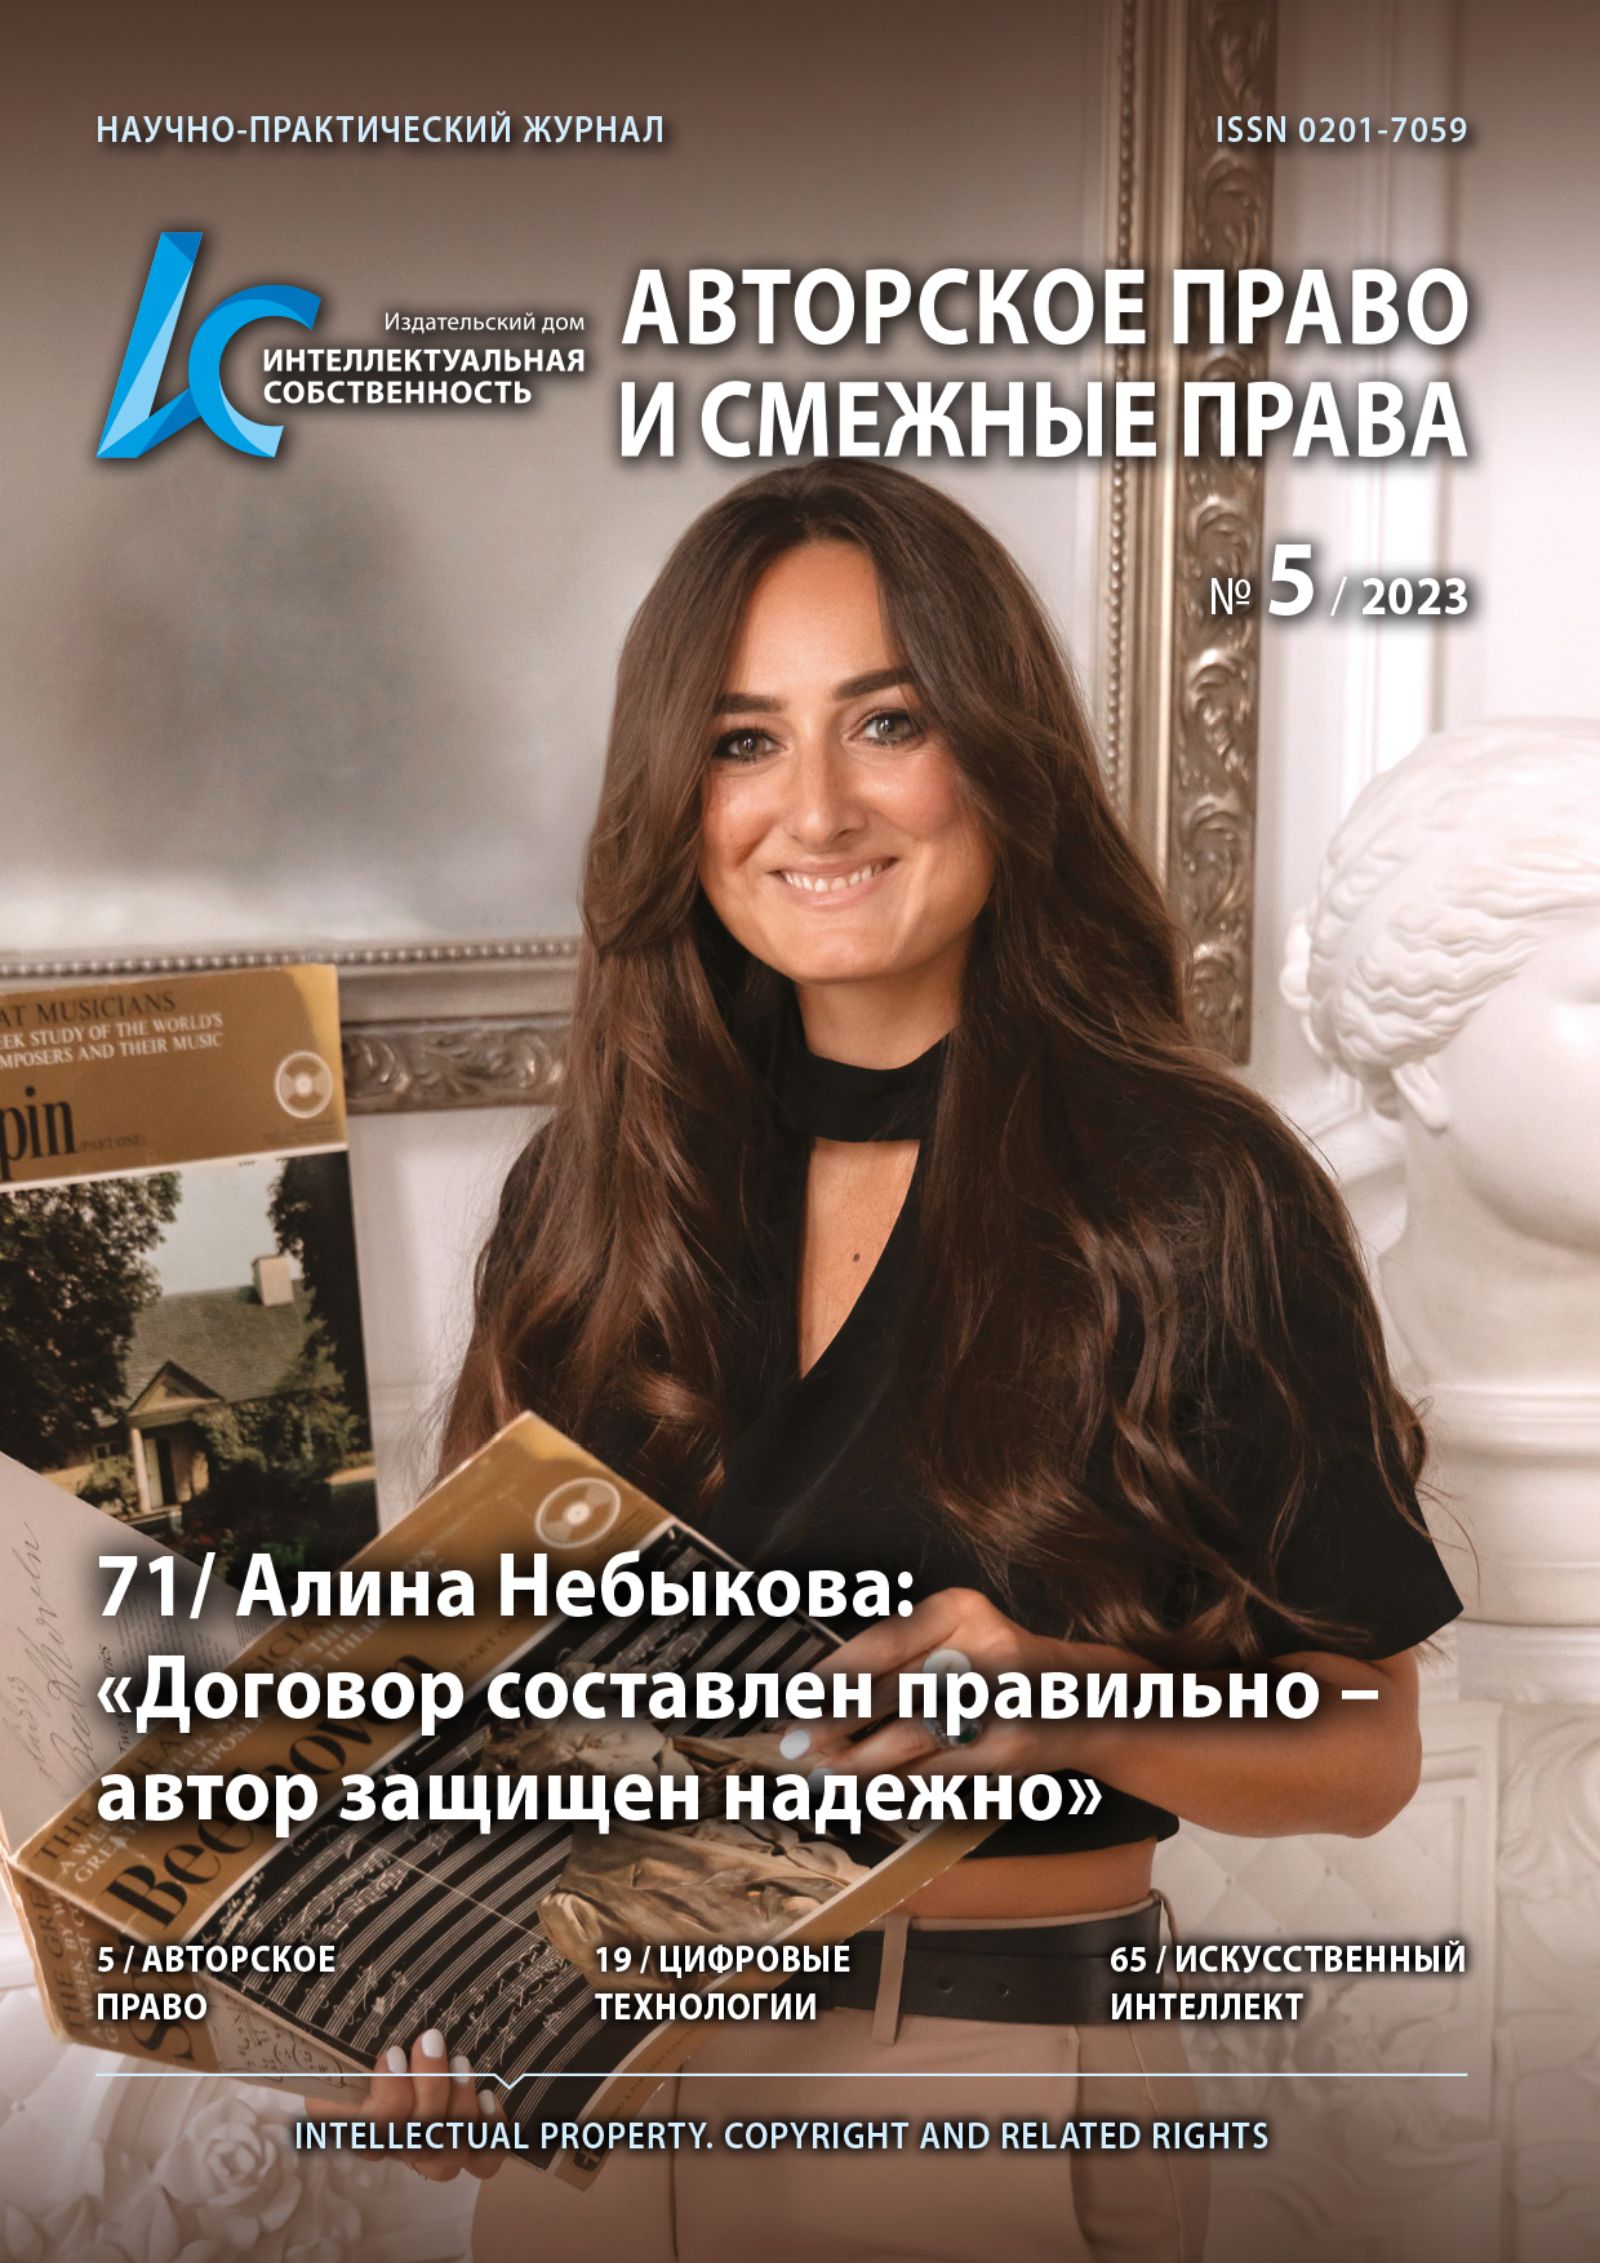 Алина Небыкова: «Договор составлен правильно – автор защищен надежно»